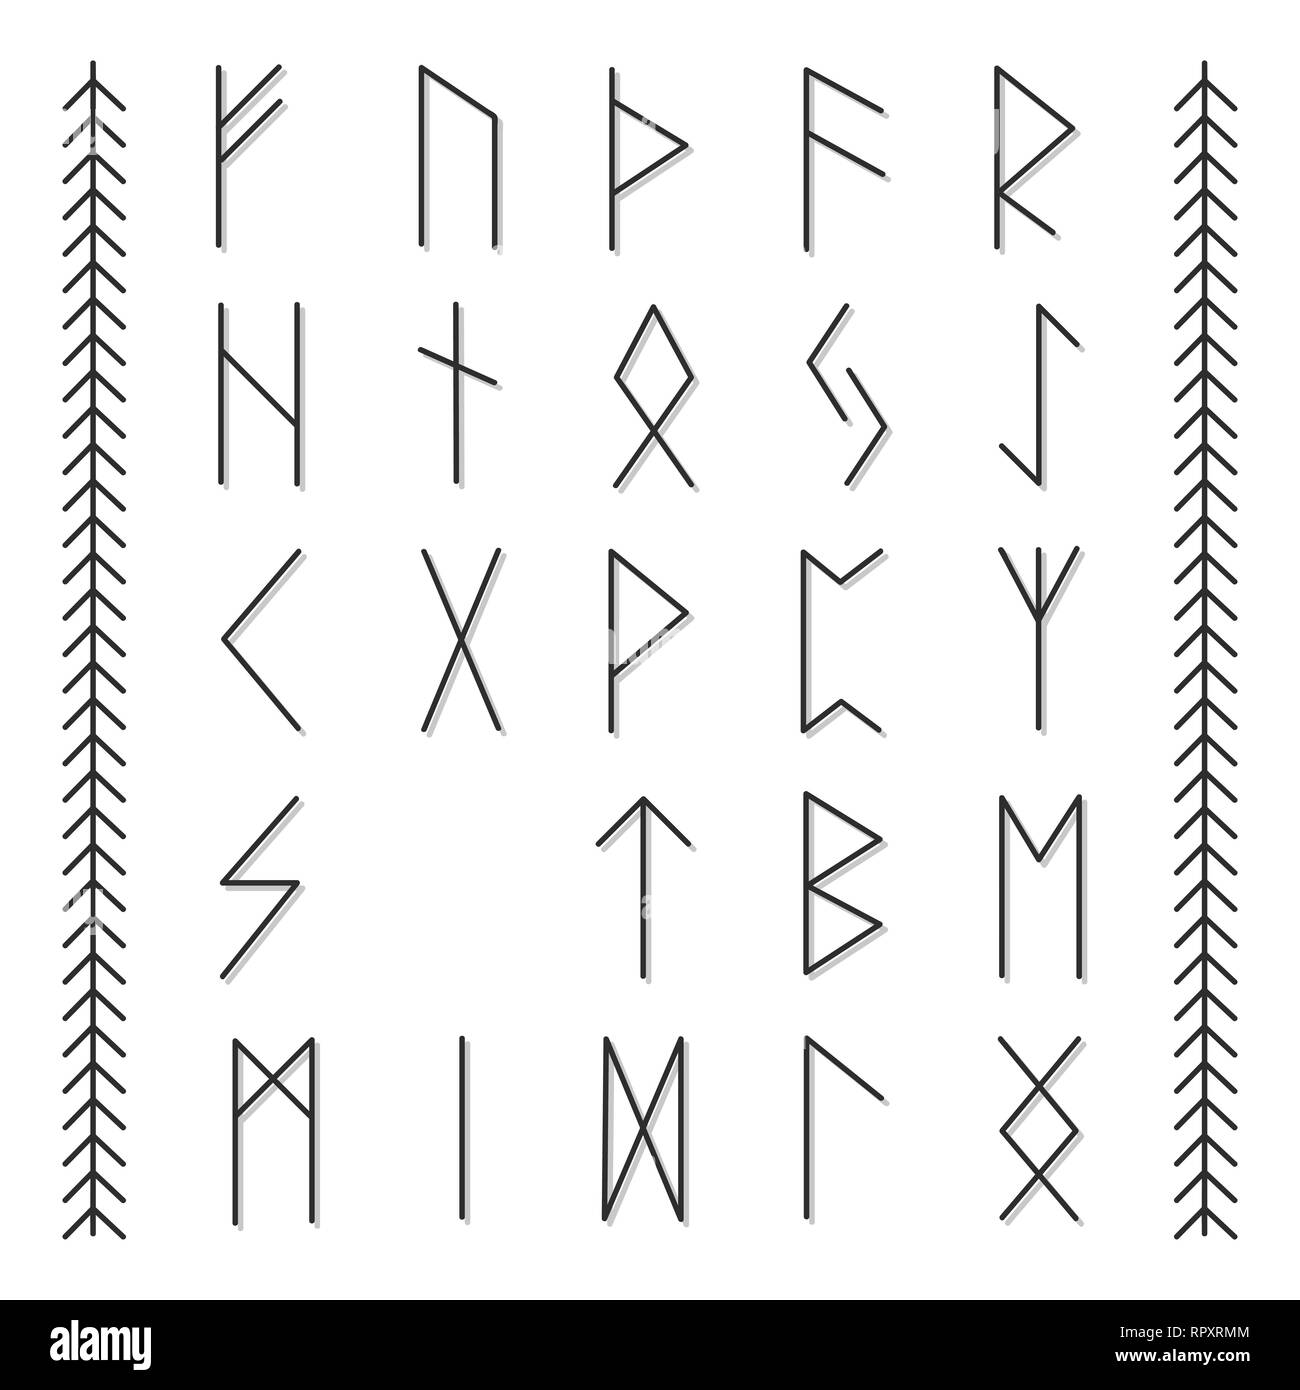 Jeu de runes scandinaves en vieux norrois. L'alphabet runique, futhark. Illustration de Vecteur